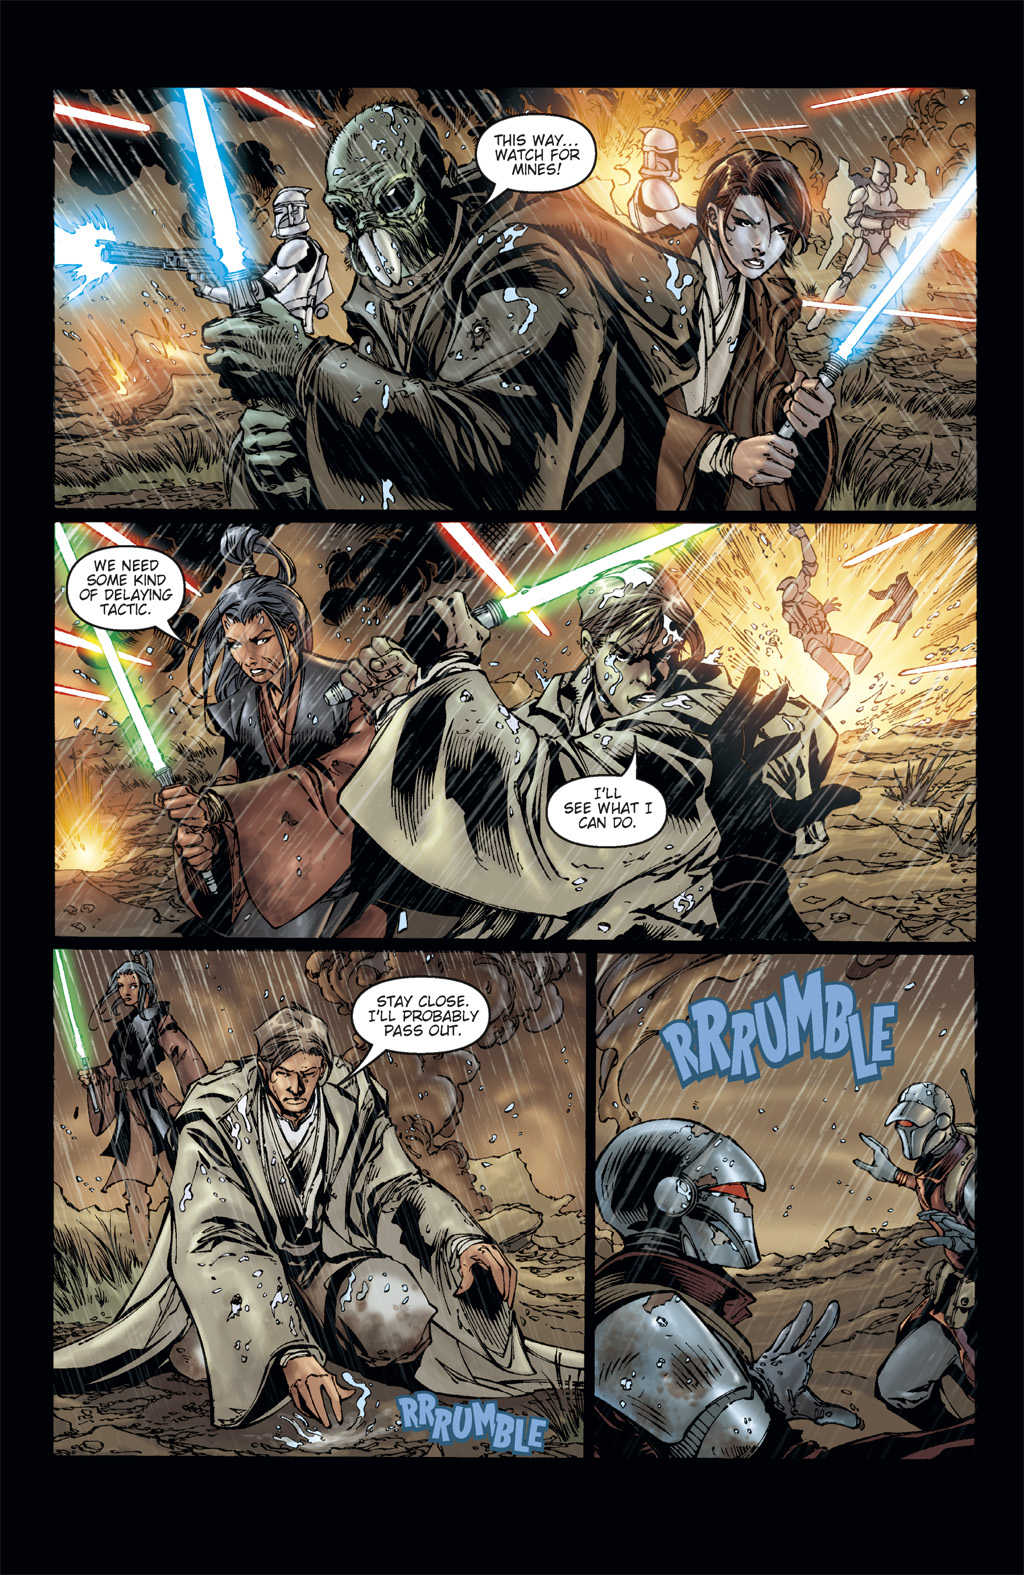 Read online Star Wars: Clone Wars comic -  Issue # TPB 3 - 48